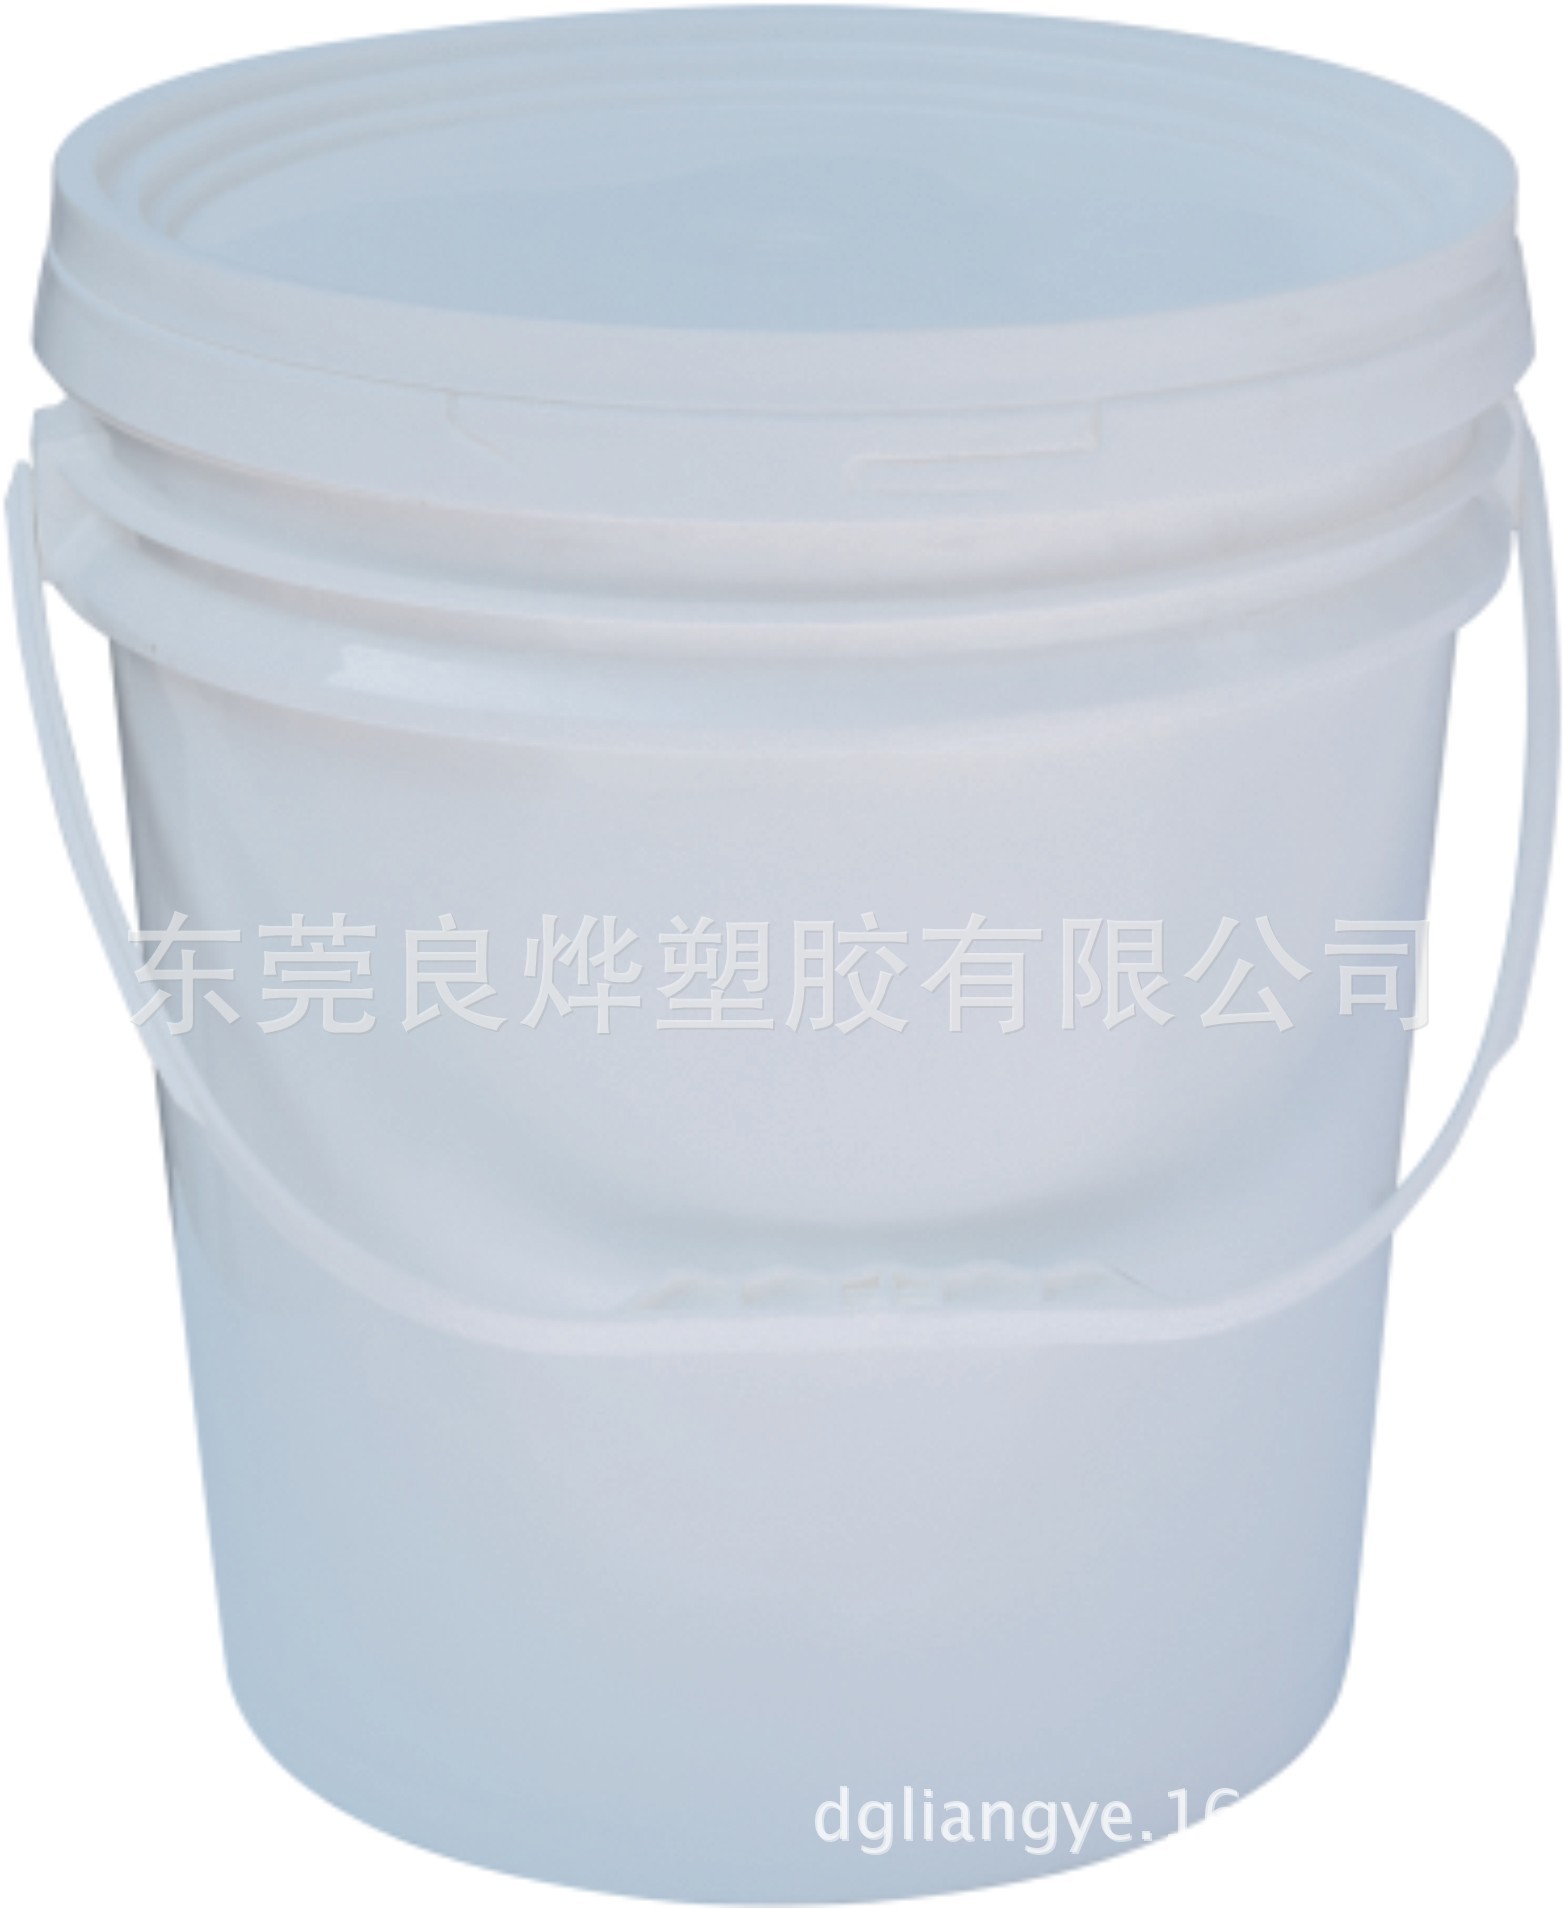 东莞市供应硅胶包装桶厂家16L硅胶包装桶 耐用粘和剂 电子材料包装桶选择门道 供应硅胶包装桶